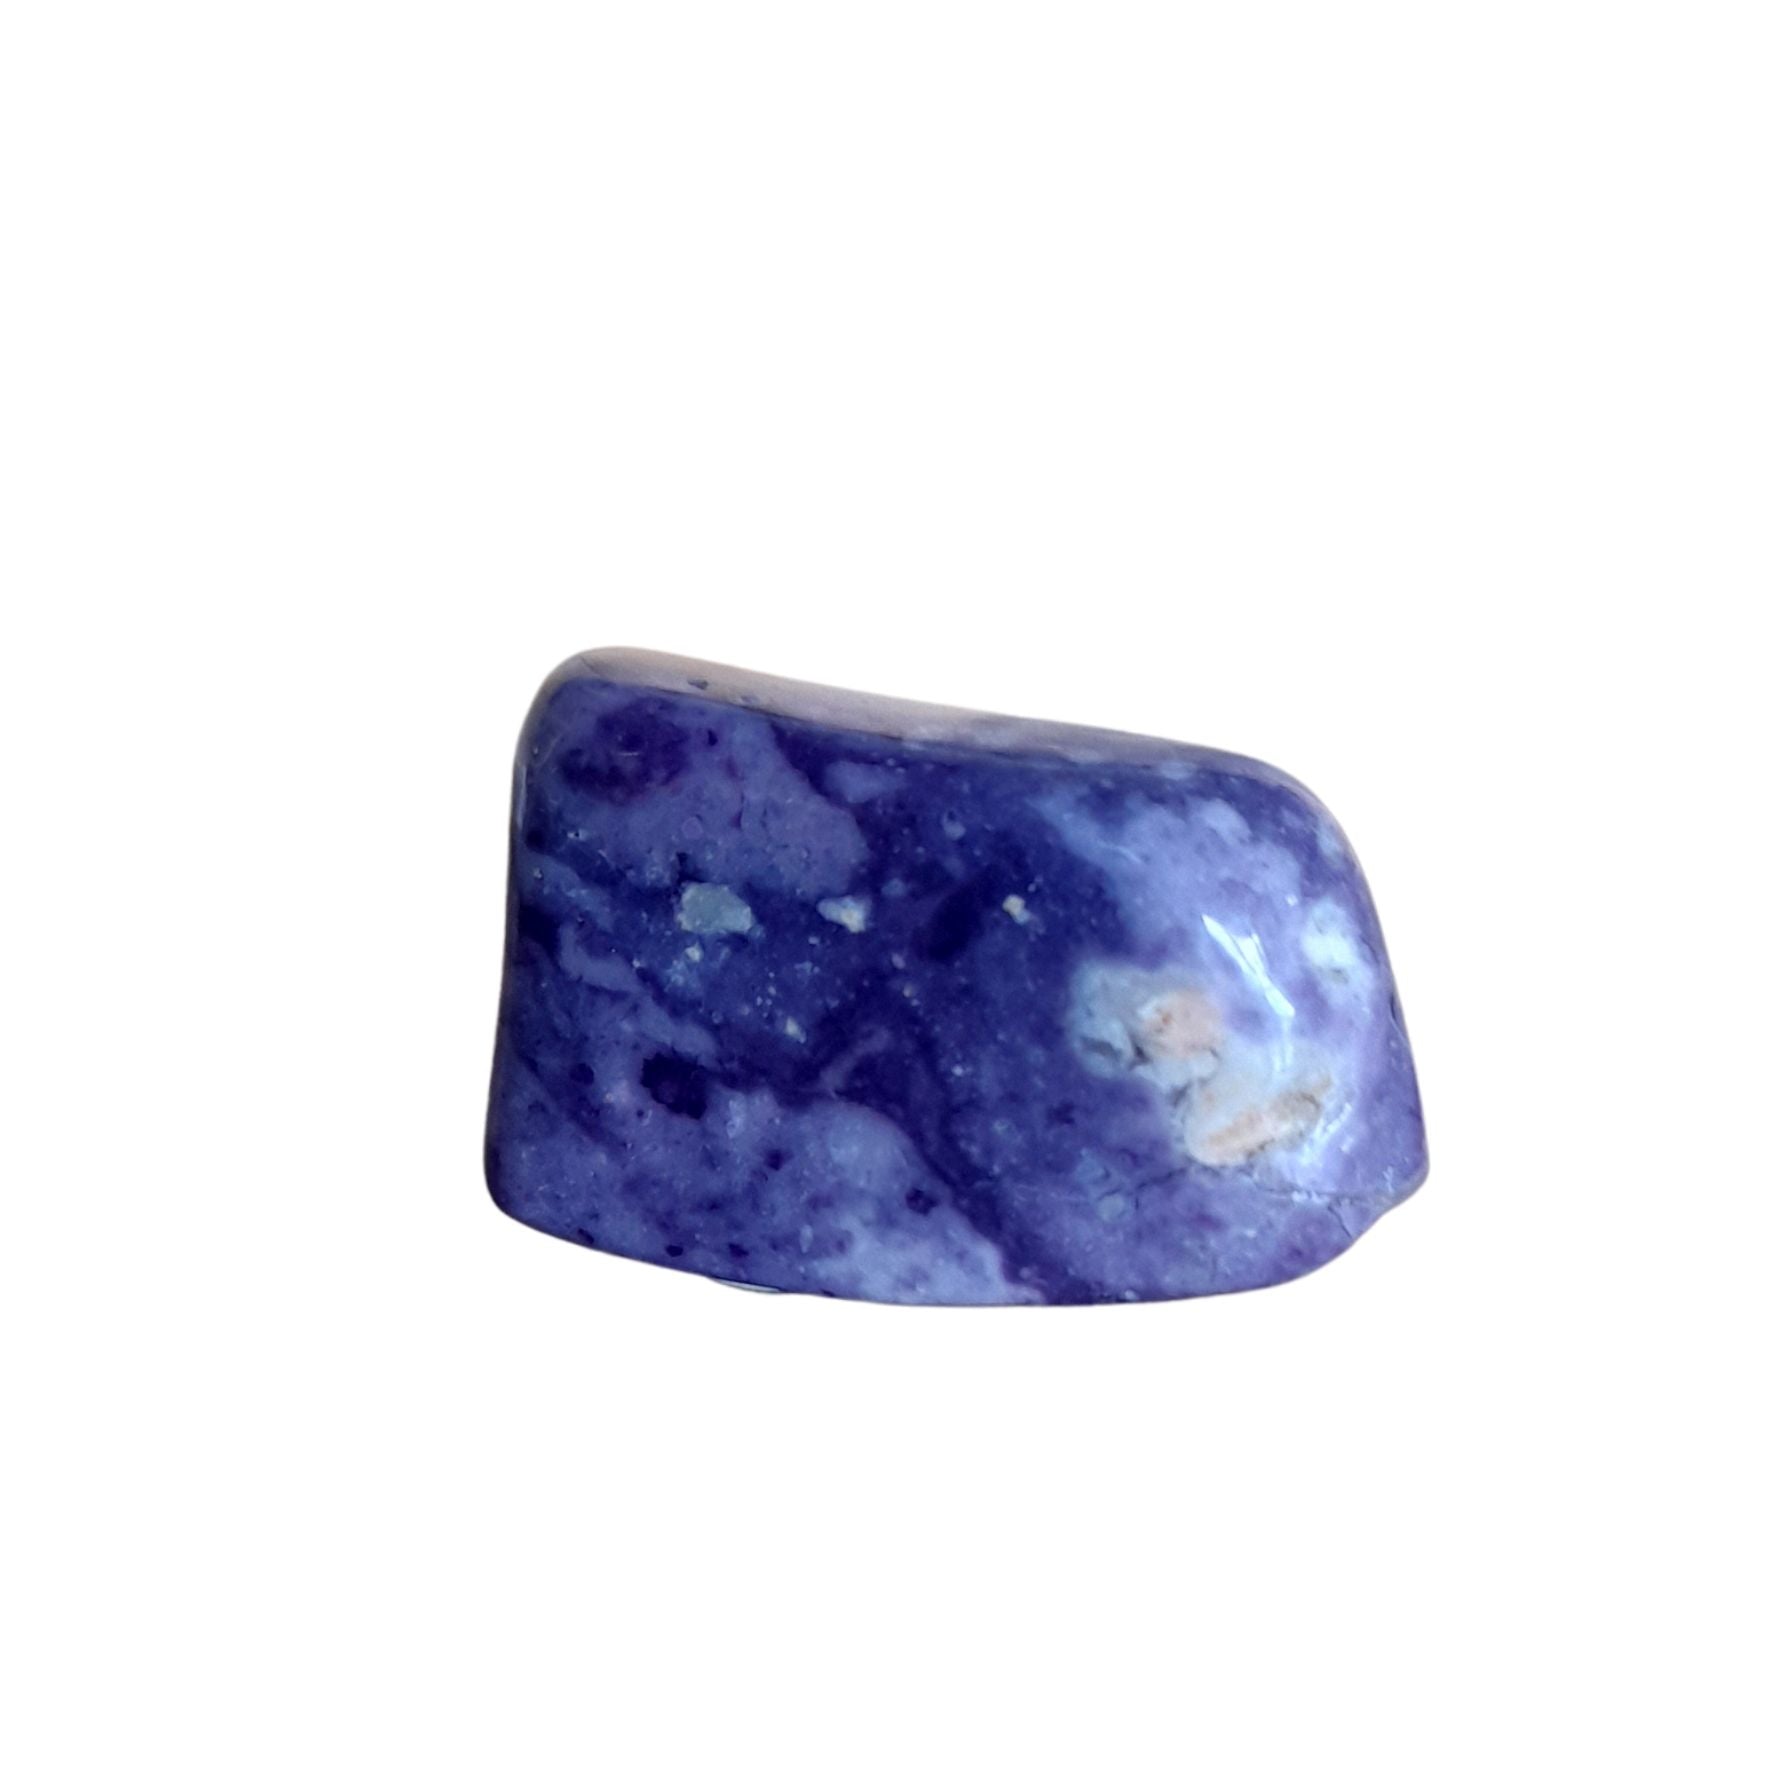 Violet Flame Opal